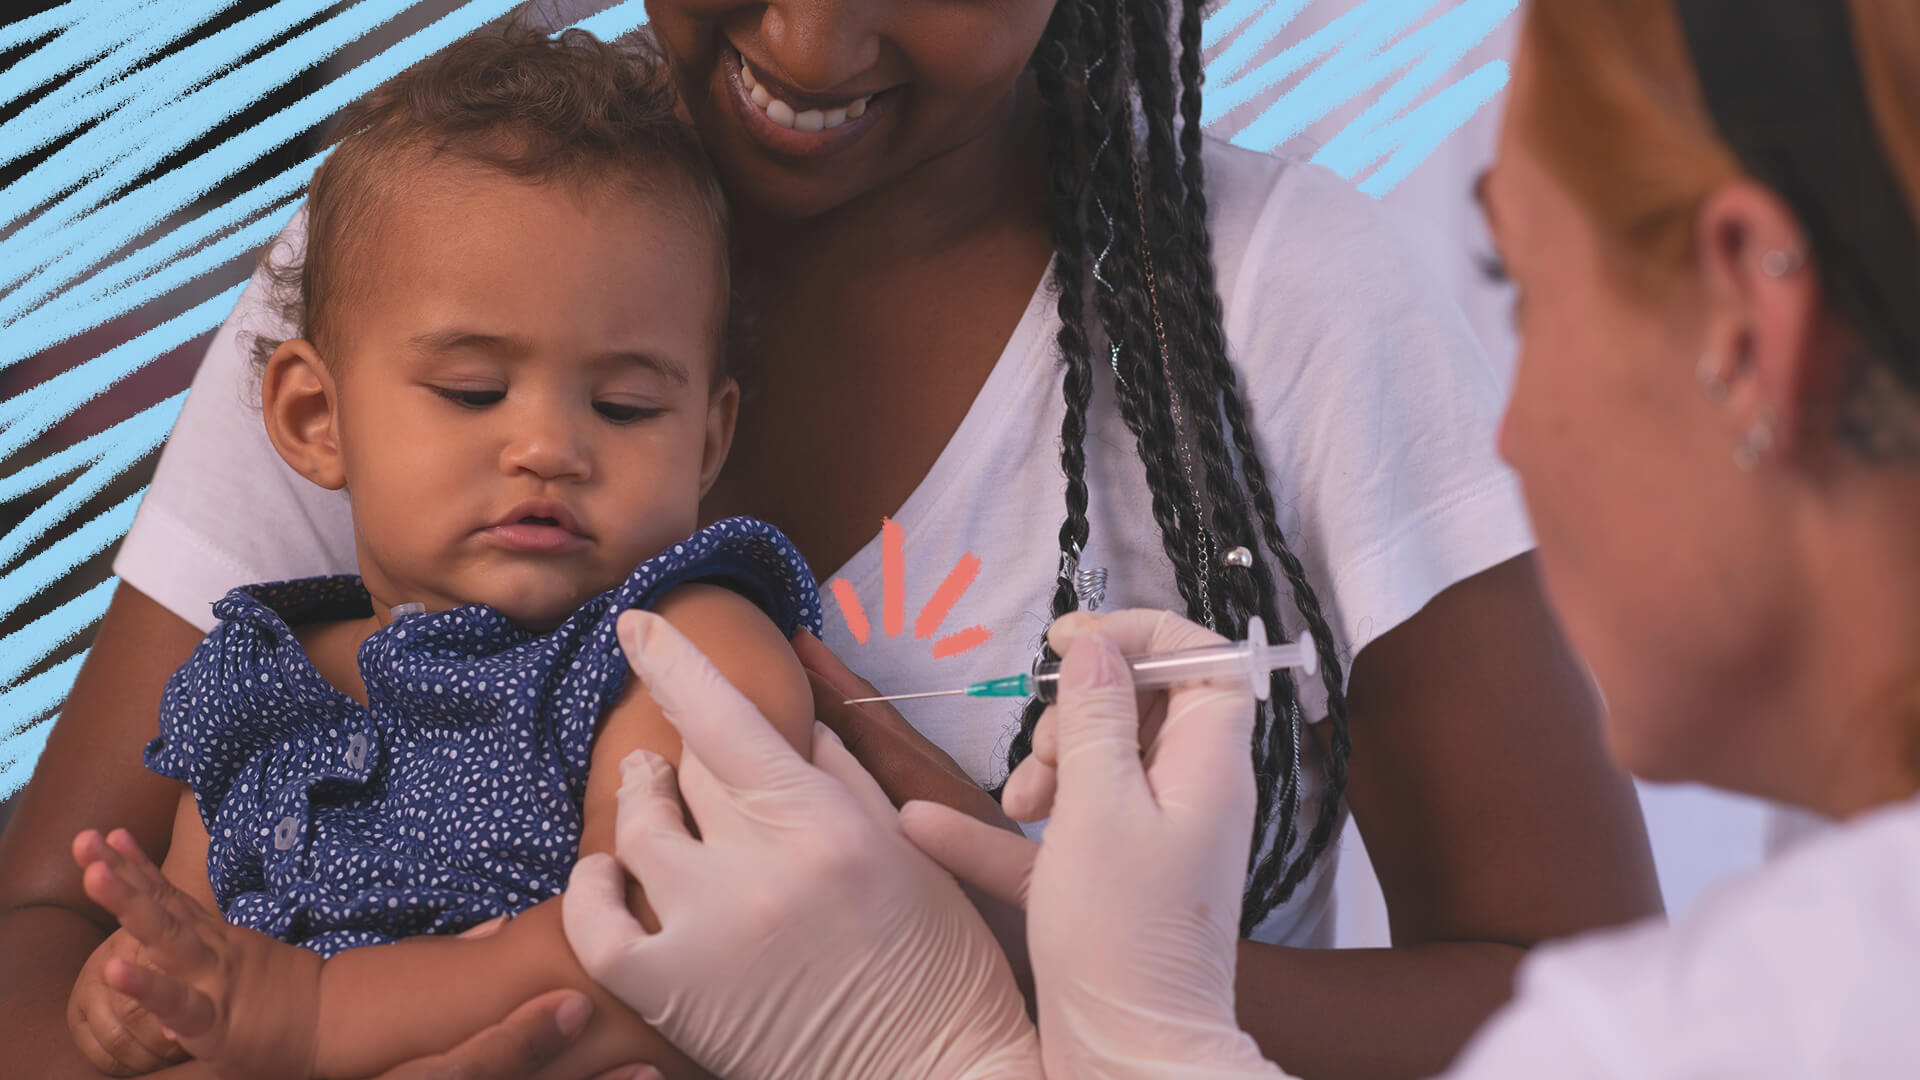 Imagem que mostra um bebê negro recebendo uma vacina no braço. Uma mulher negra o segura, sorridente, enquanto ele recebe a vacina. A imagem possui intervenções de rabiscos coloridos.